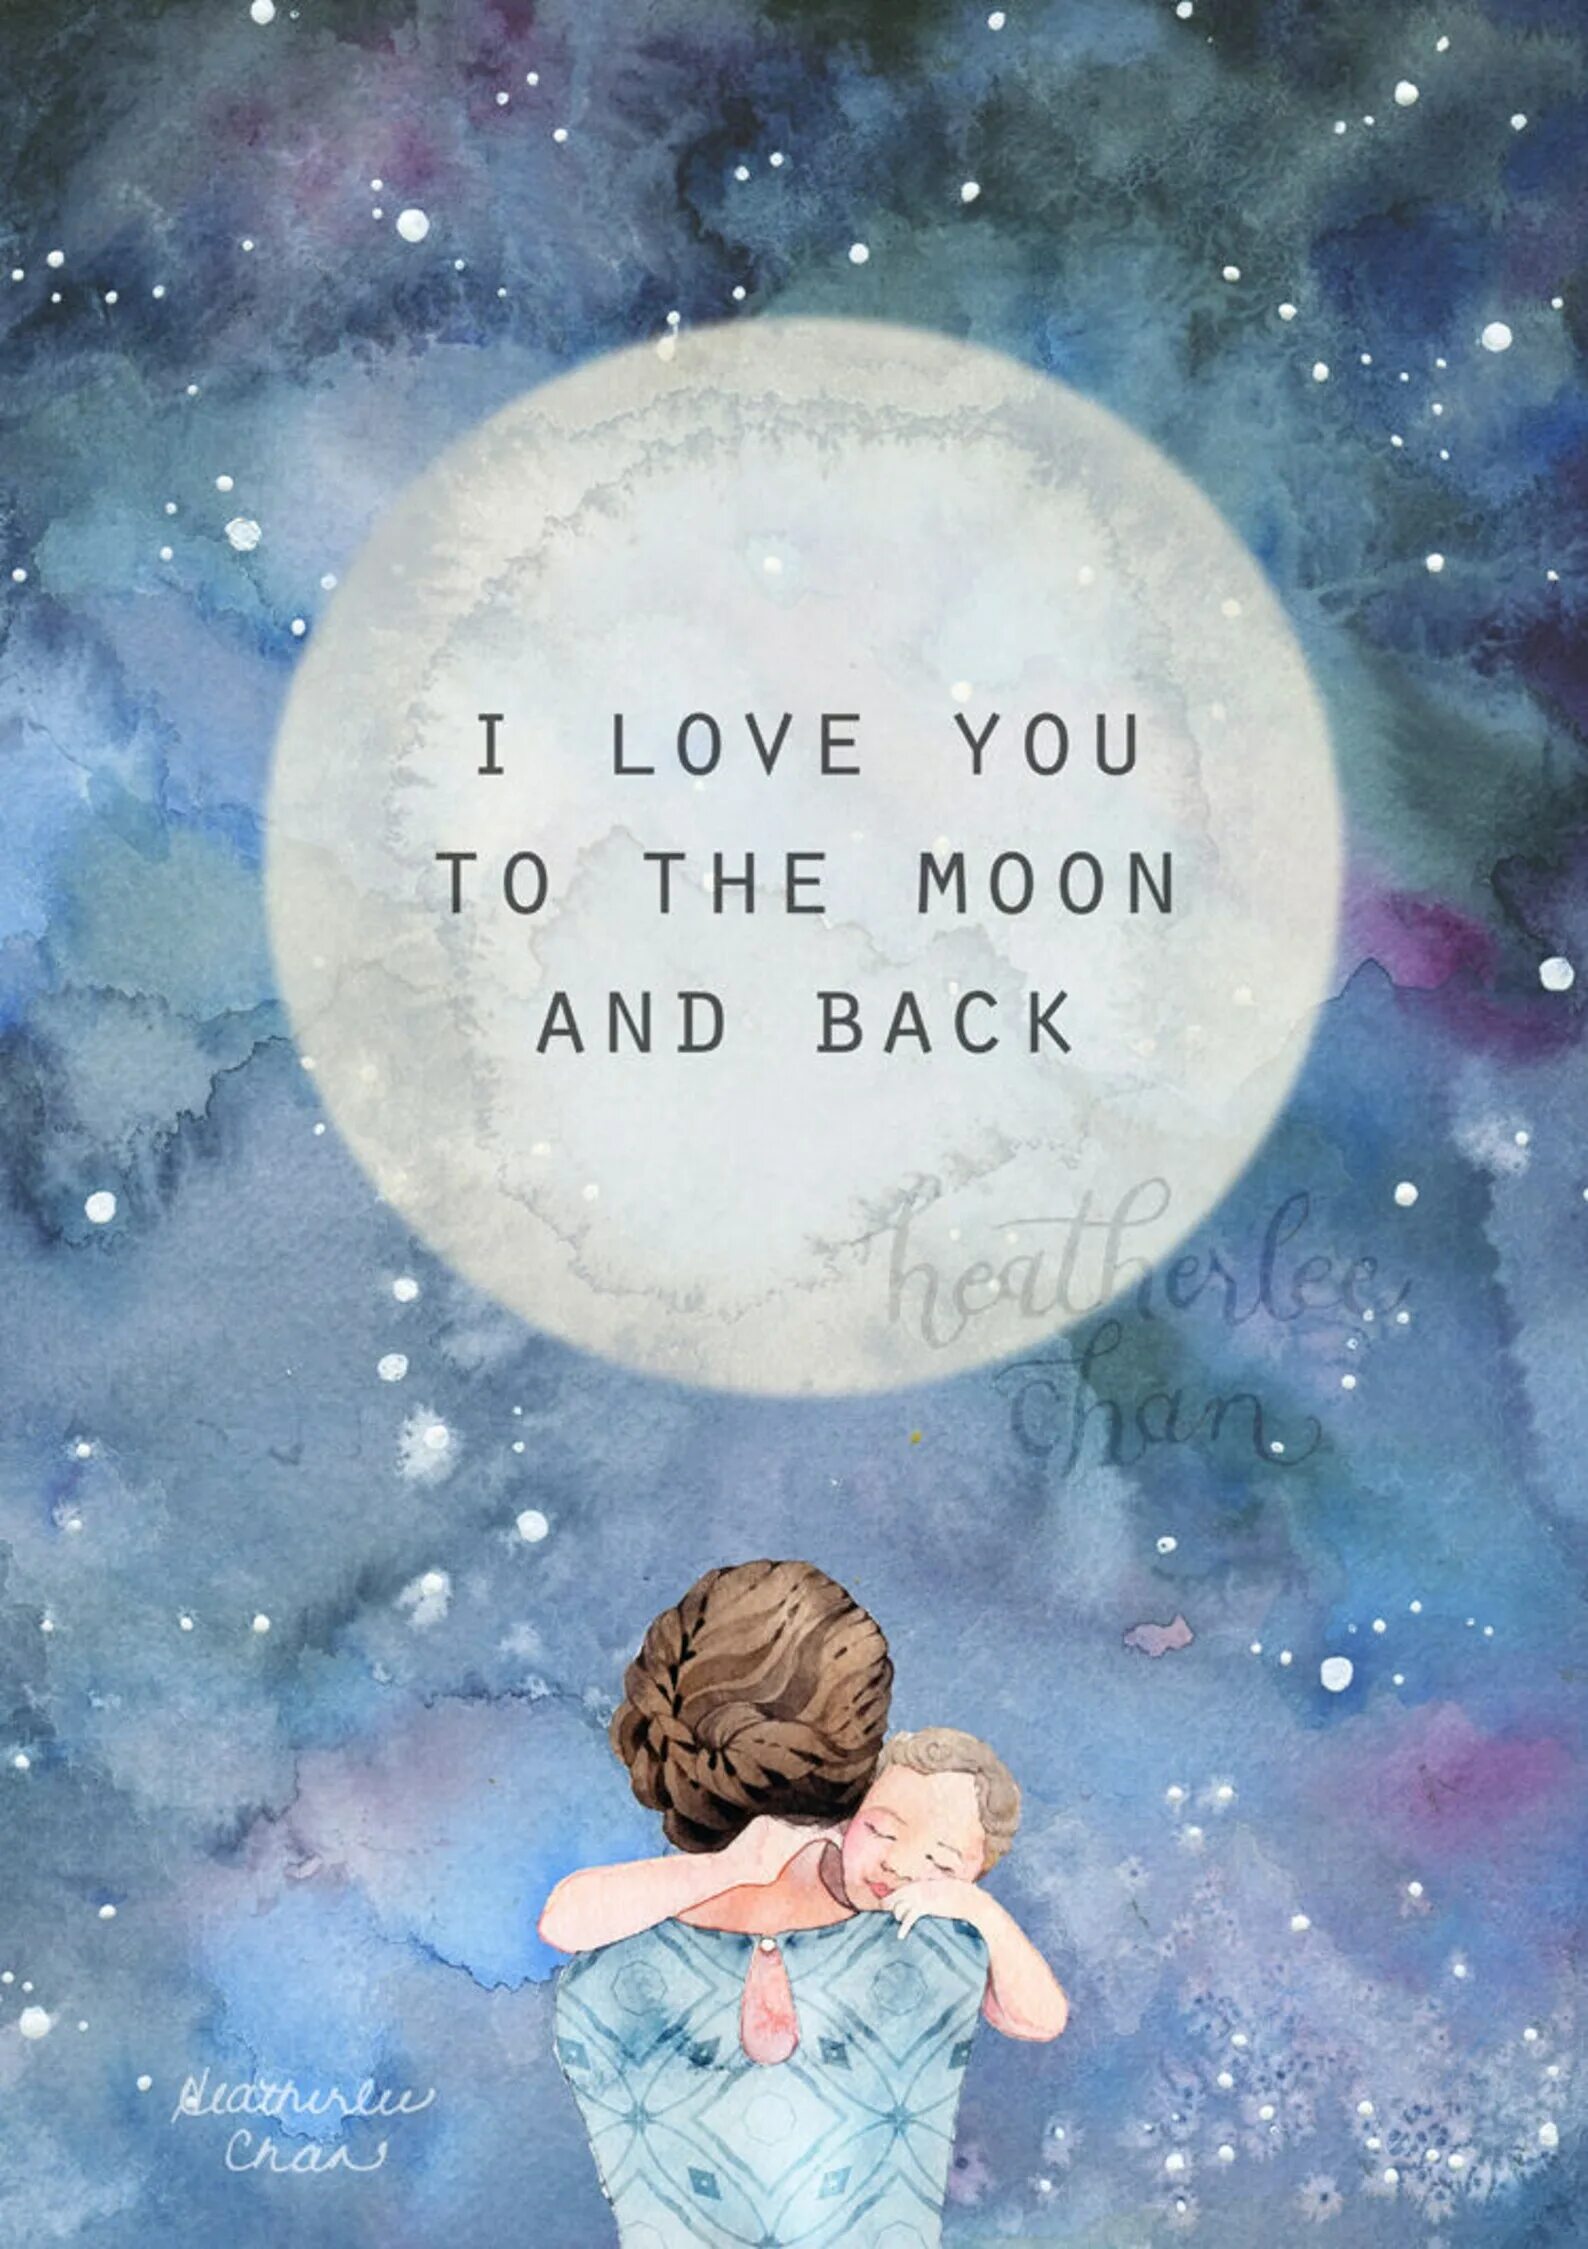 To the Moon and back. Love to the Moon and back. I Love you to the Moon and back. До Луны и обратно. Love you to the moon